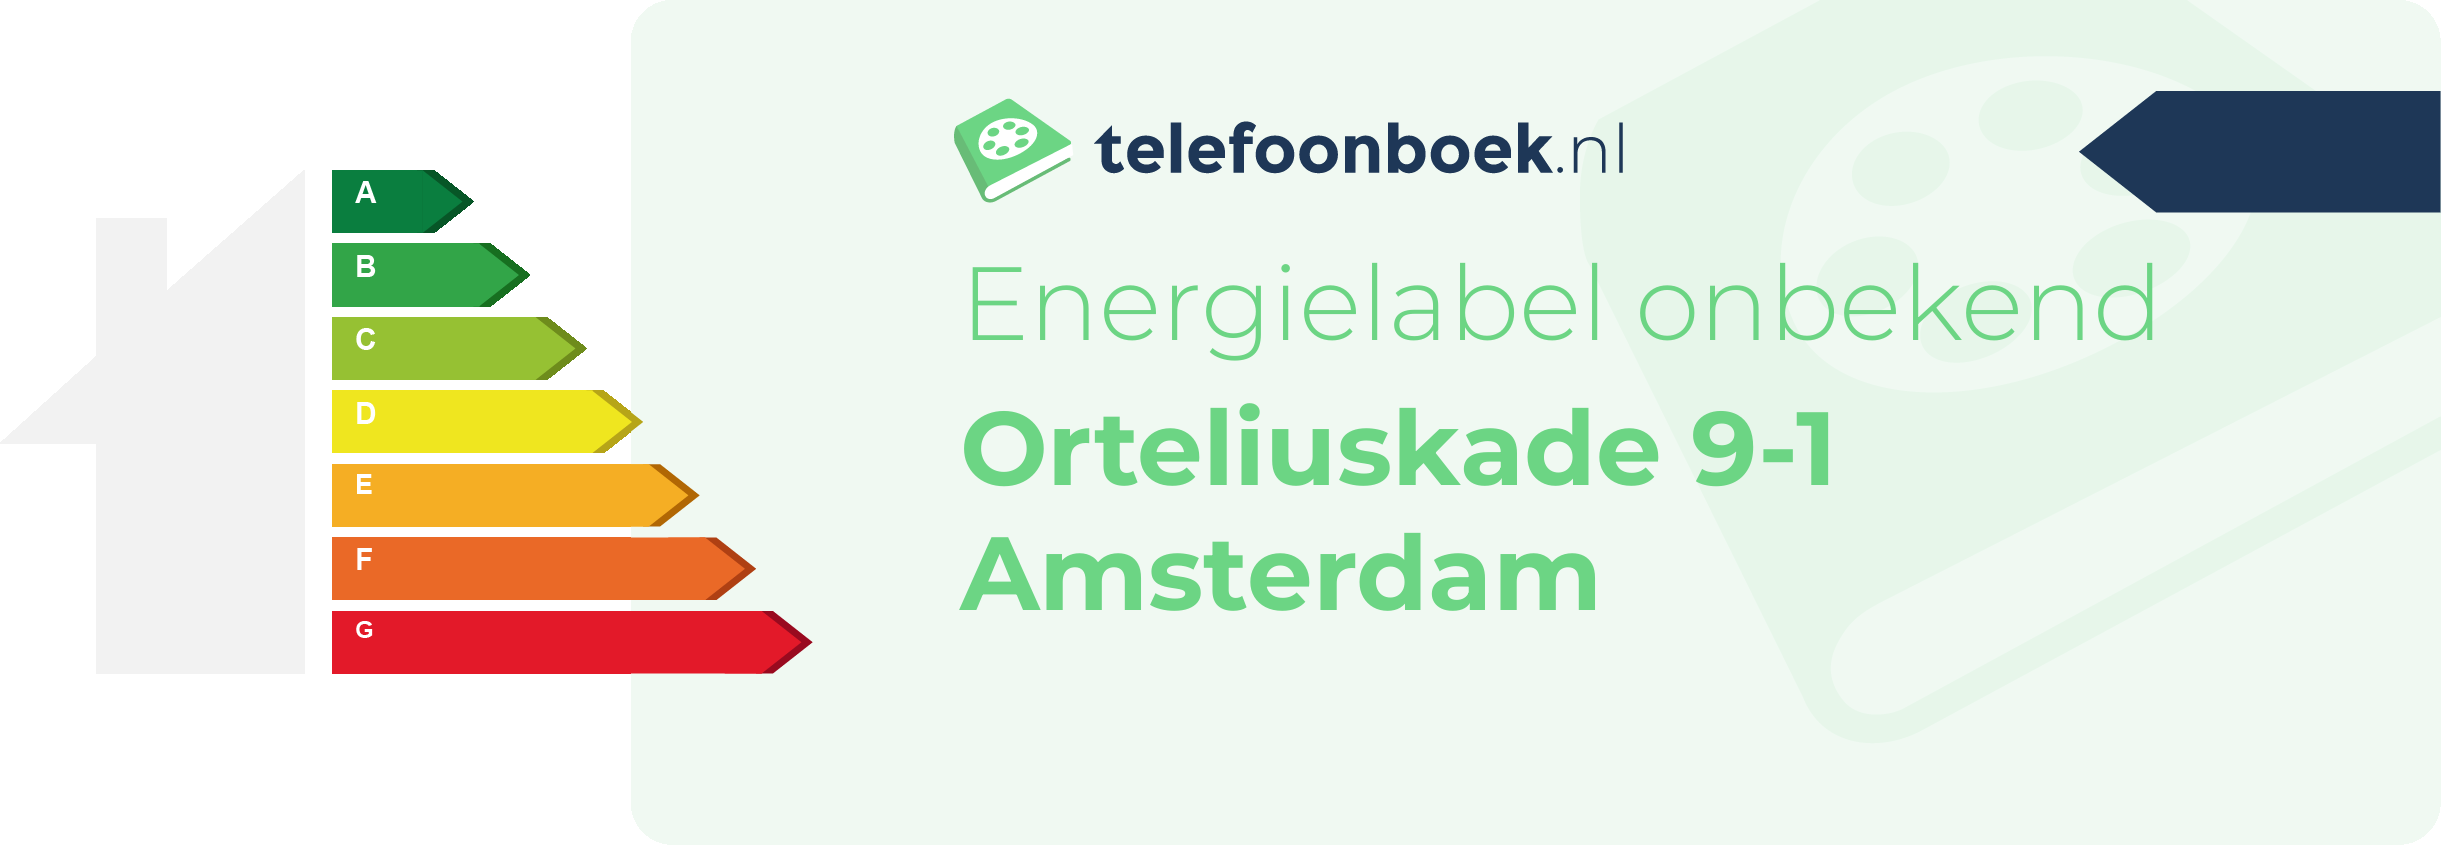 Energielabel Orteliuskade 9-1 Amsterdam